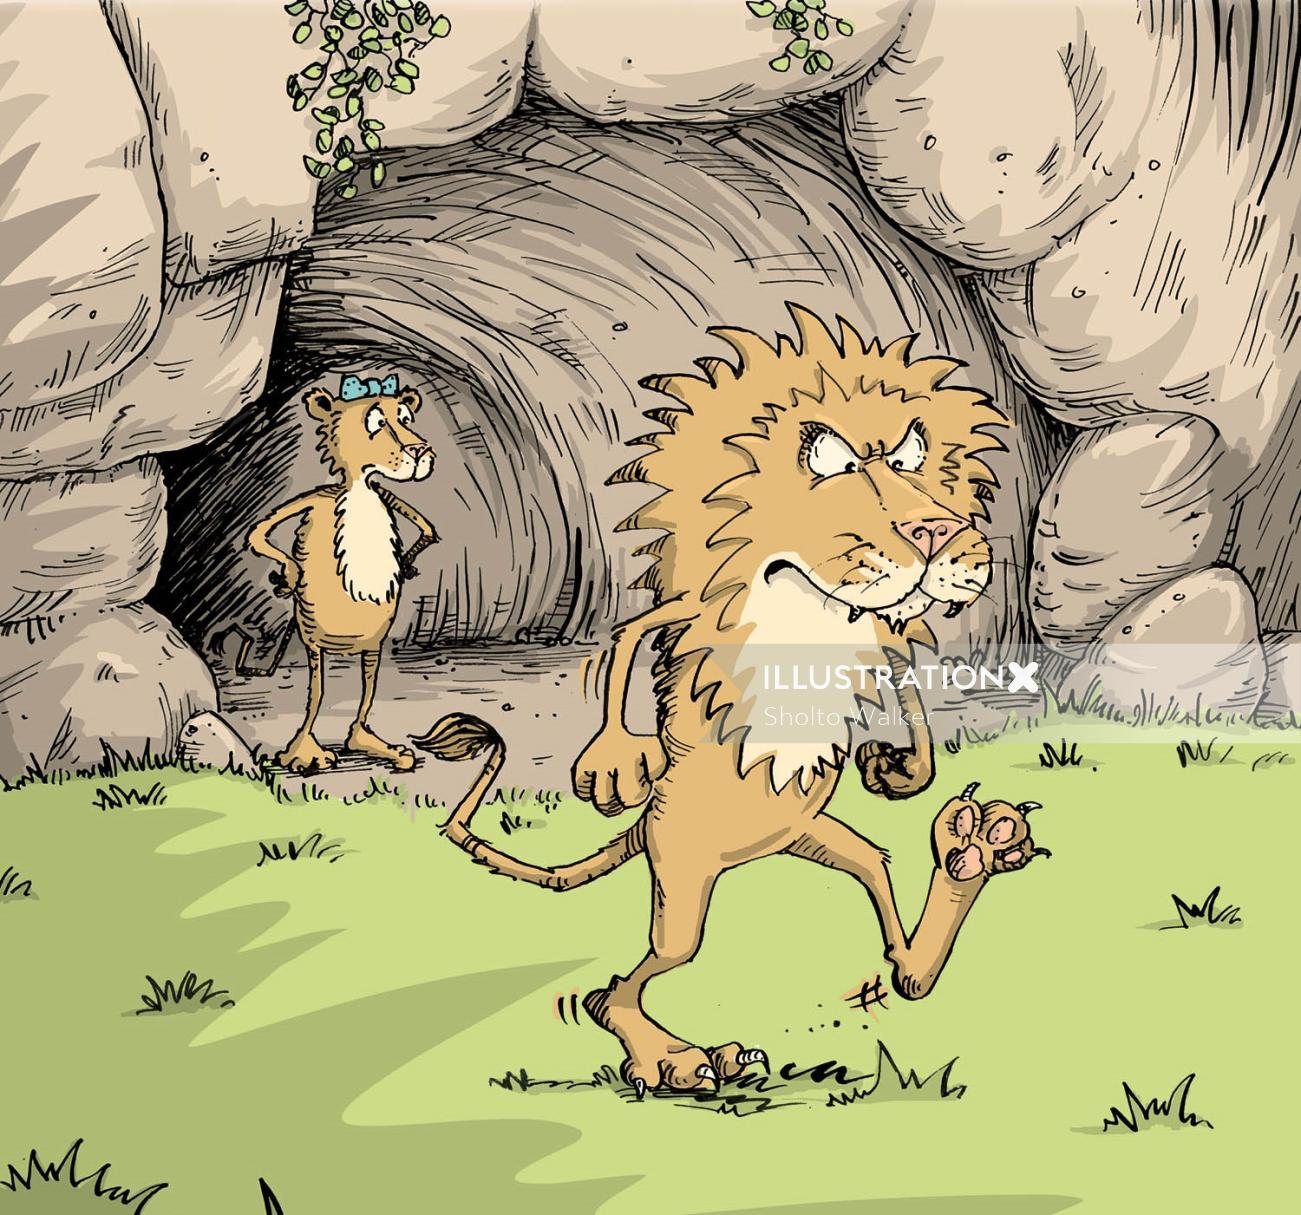 ライオンの漫画イラスト